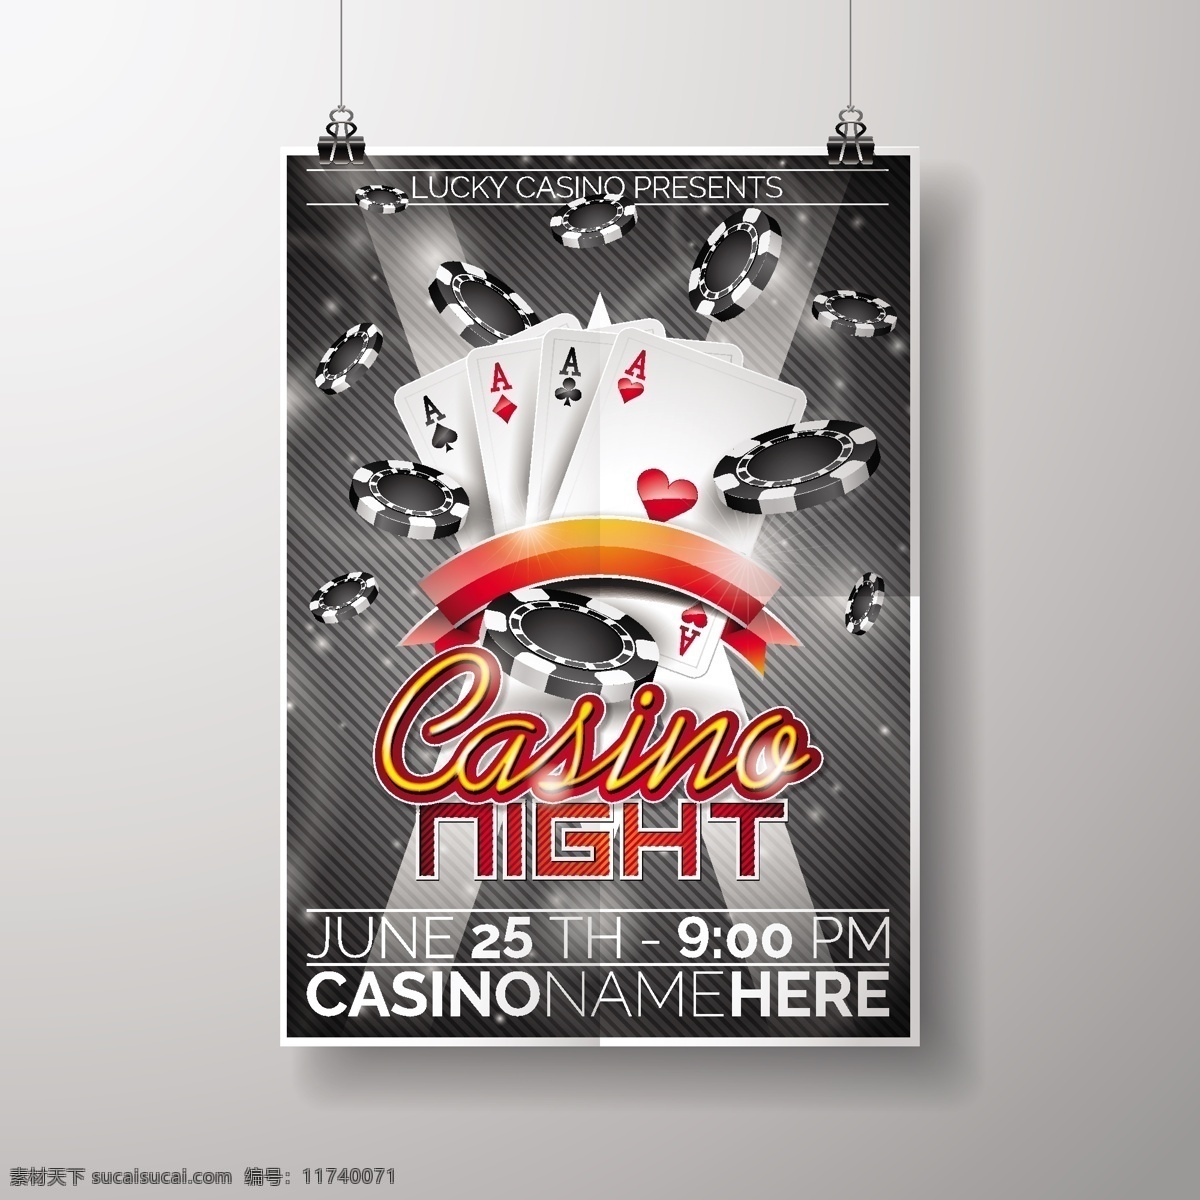 赌场海报模板 小册子 传单 海报 商业 模板 宣传册模板 颜色 游戏 文具 传单模板 海报模板 夜间 赌场 播放 扑克 骰子 芯片